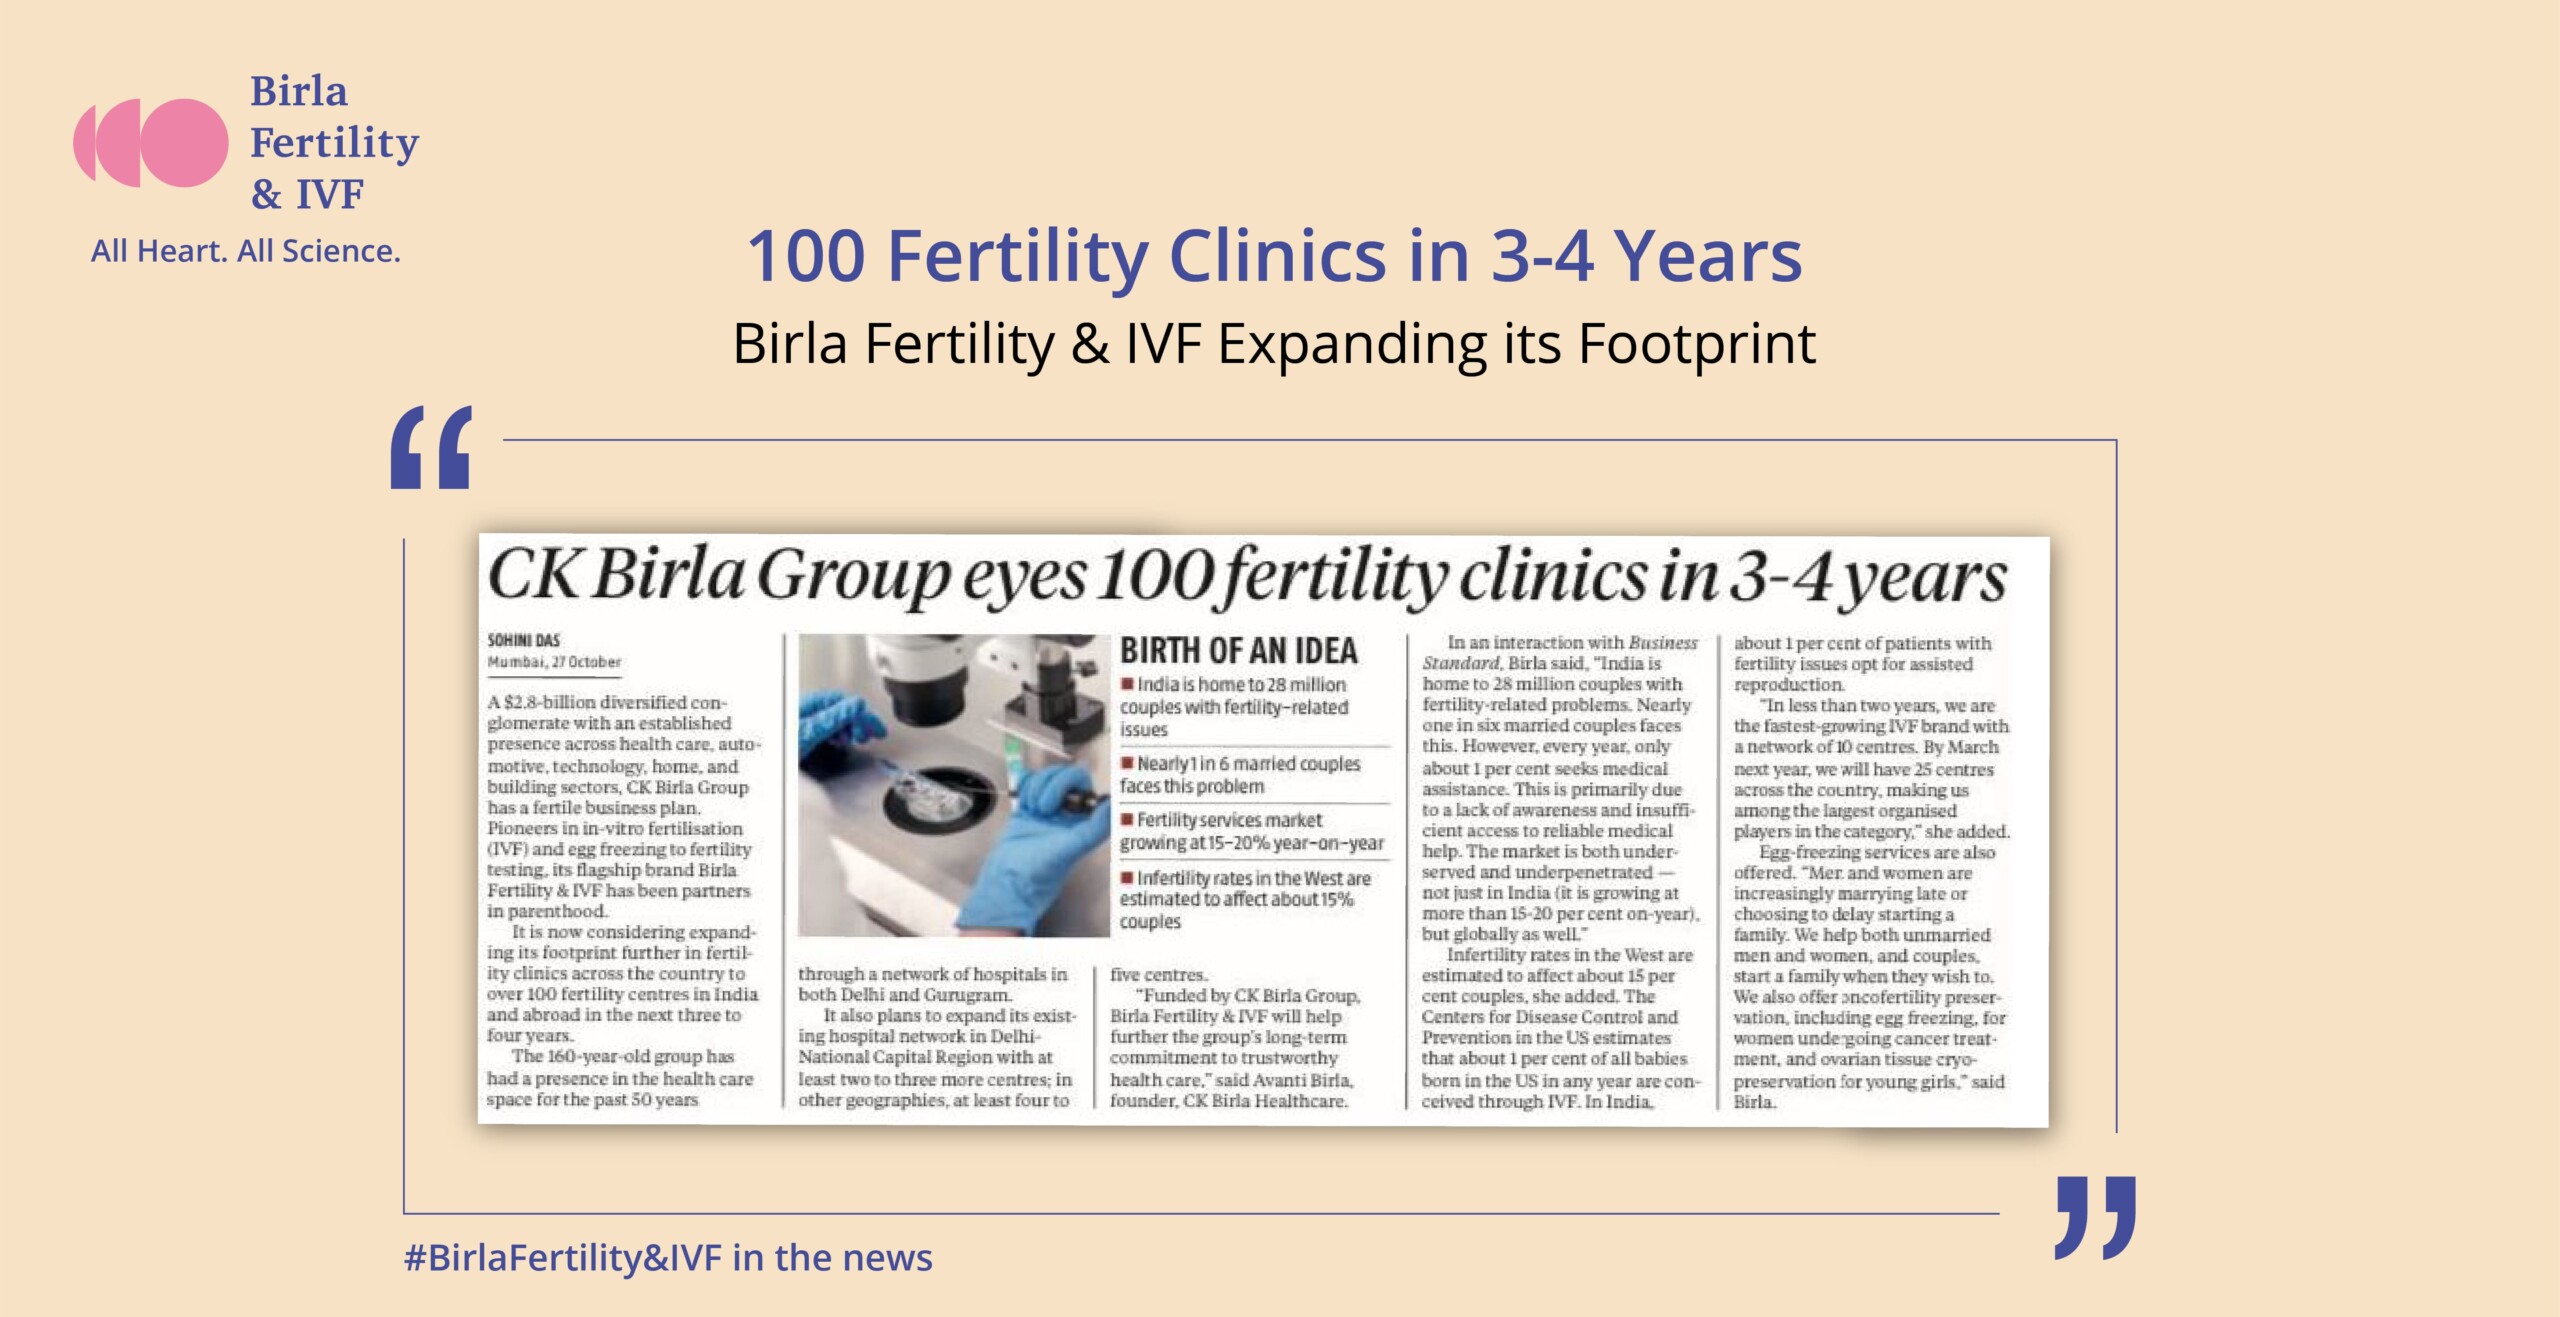 Birla Fertility & IVF eyes over 100 fertility clinics in 3 to 4 years